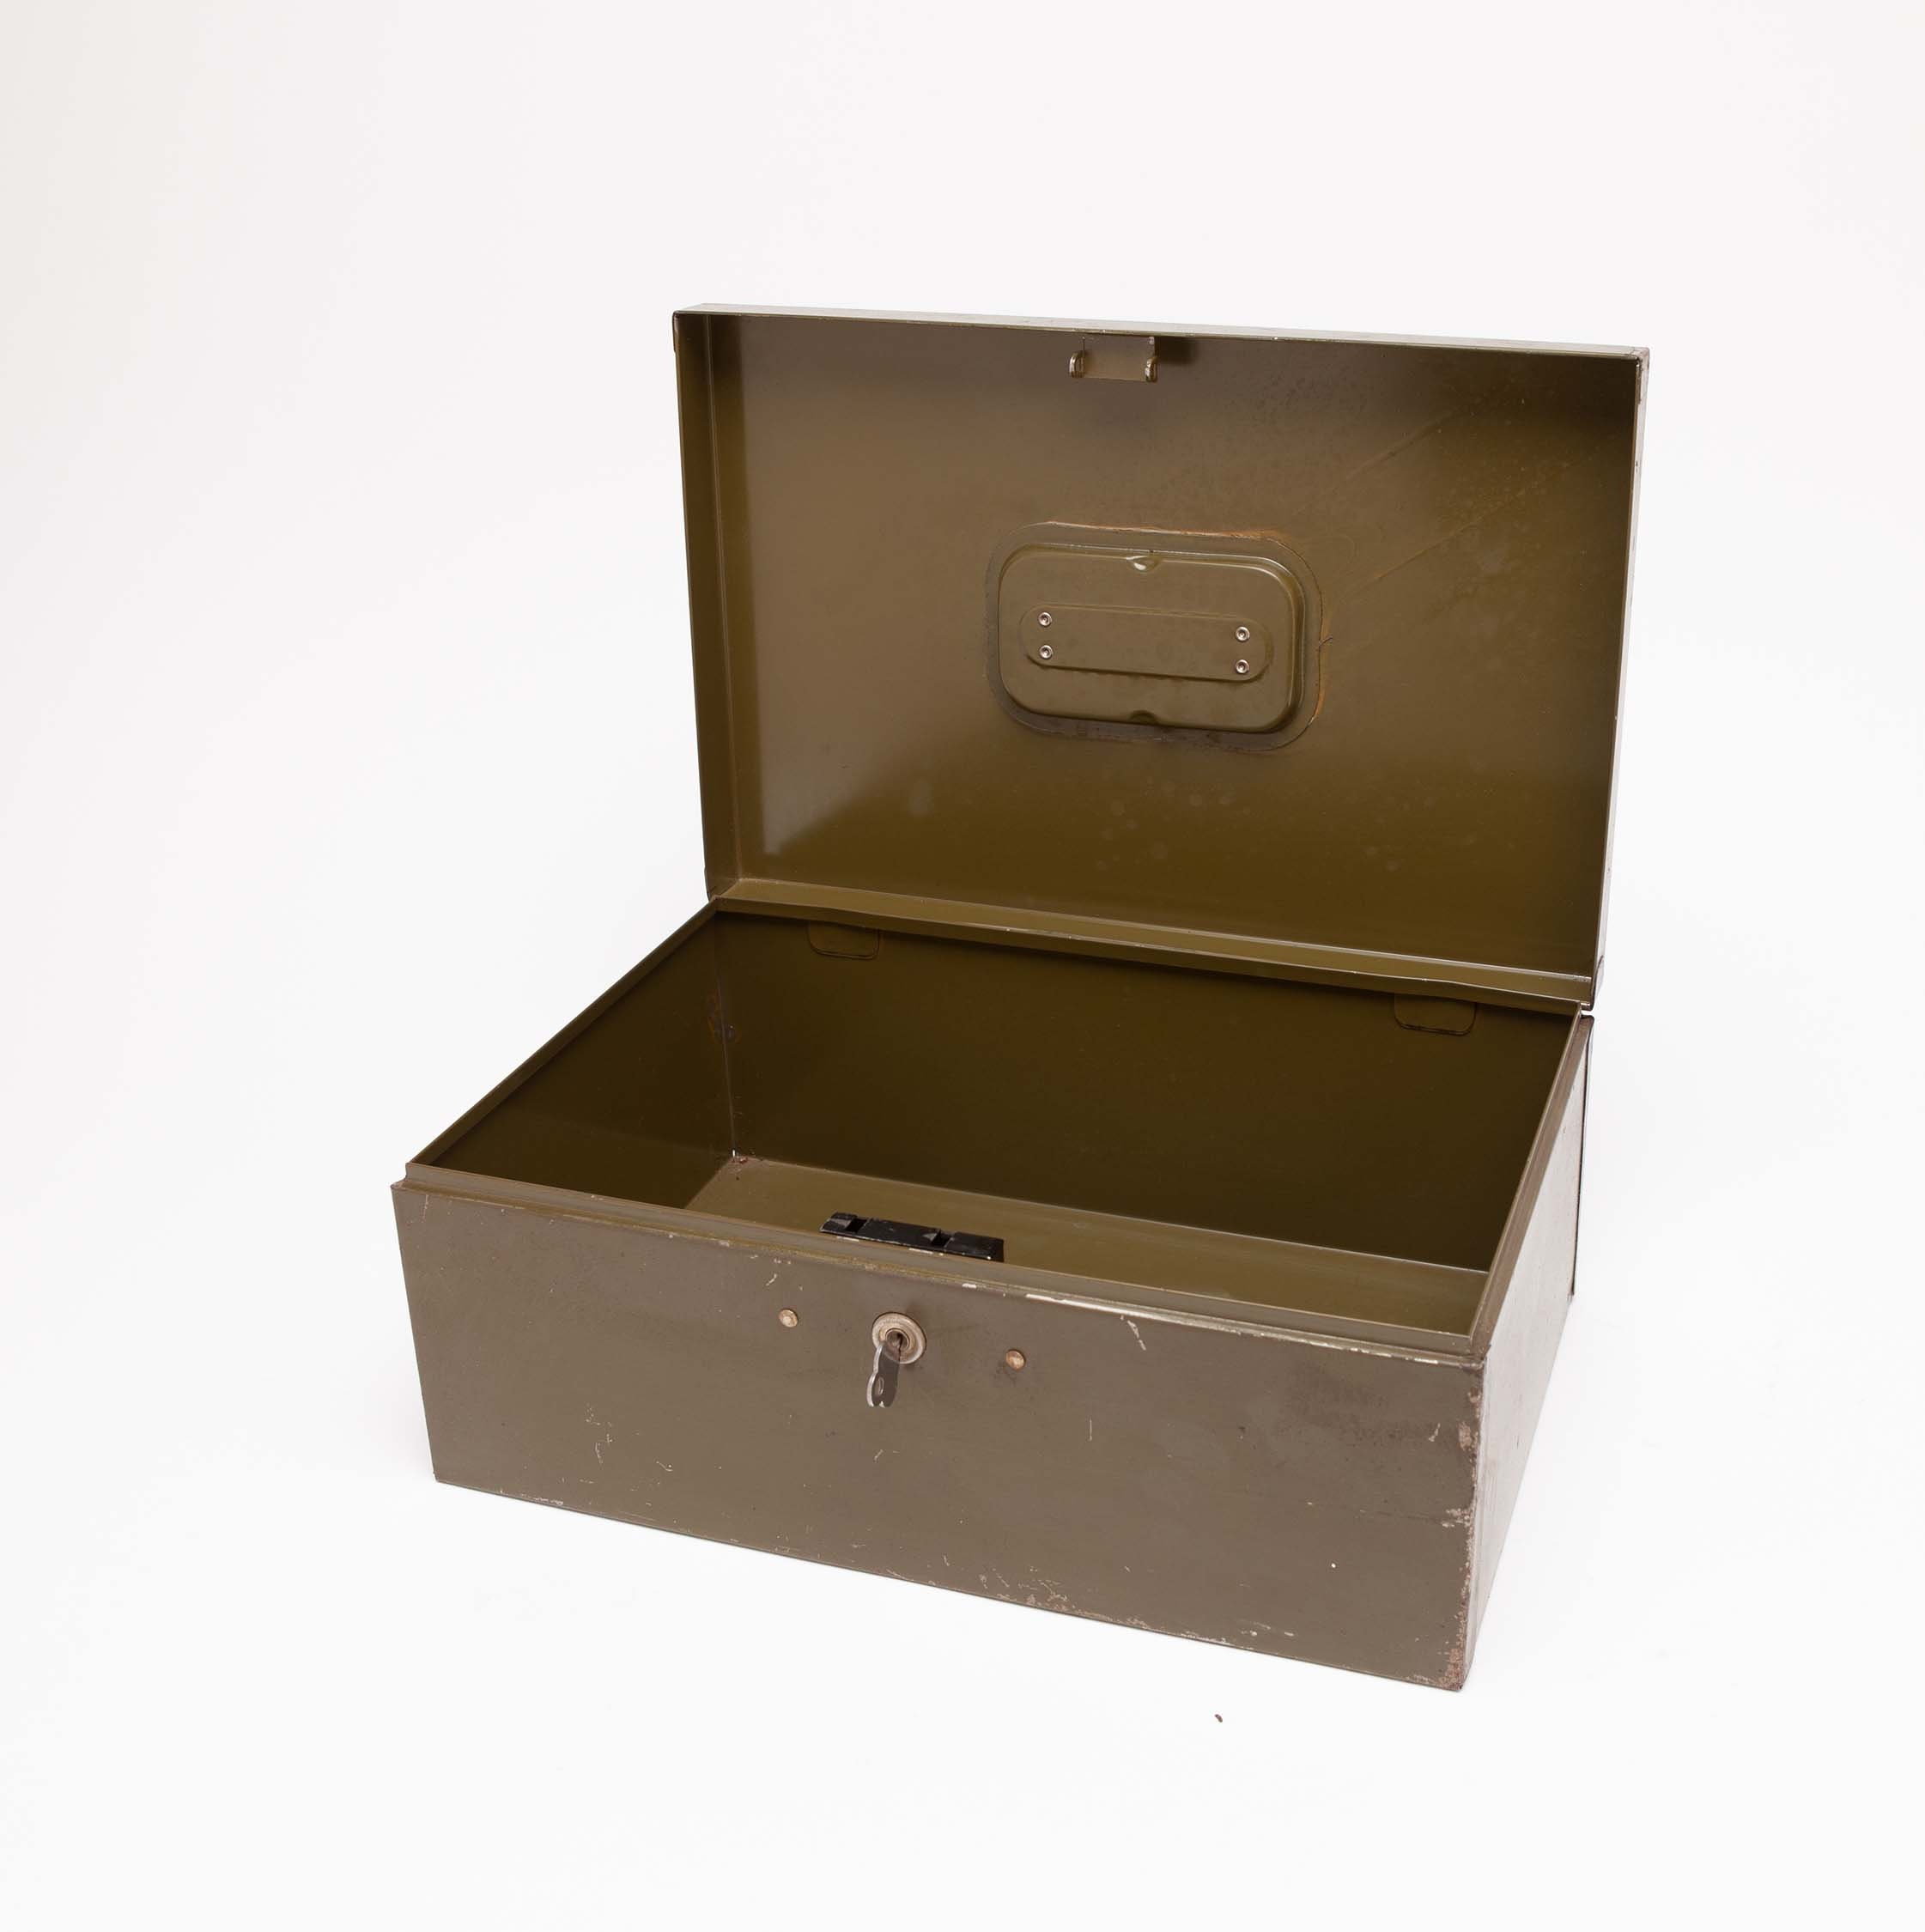 ART STEEL BOX Small Dark Green Metal File Box Locking With Original Key 2 